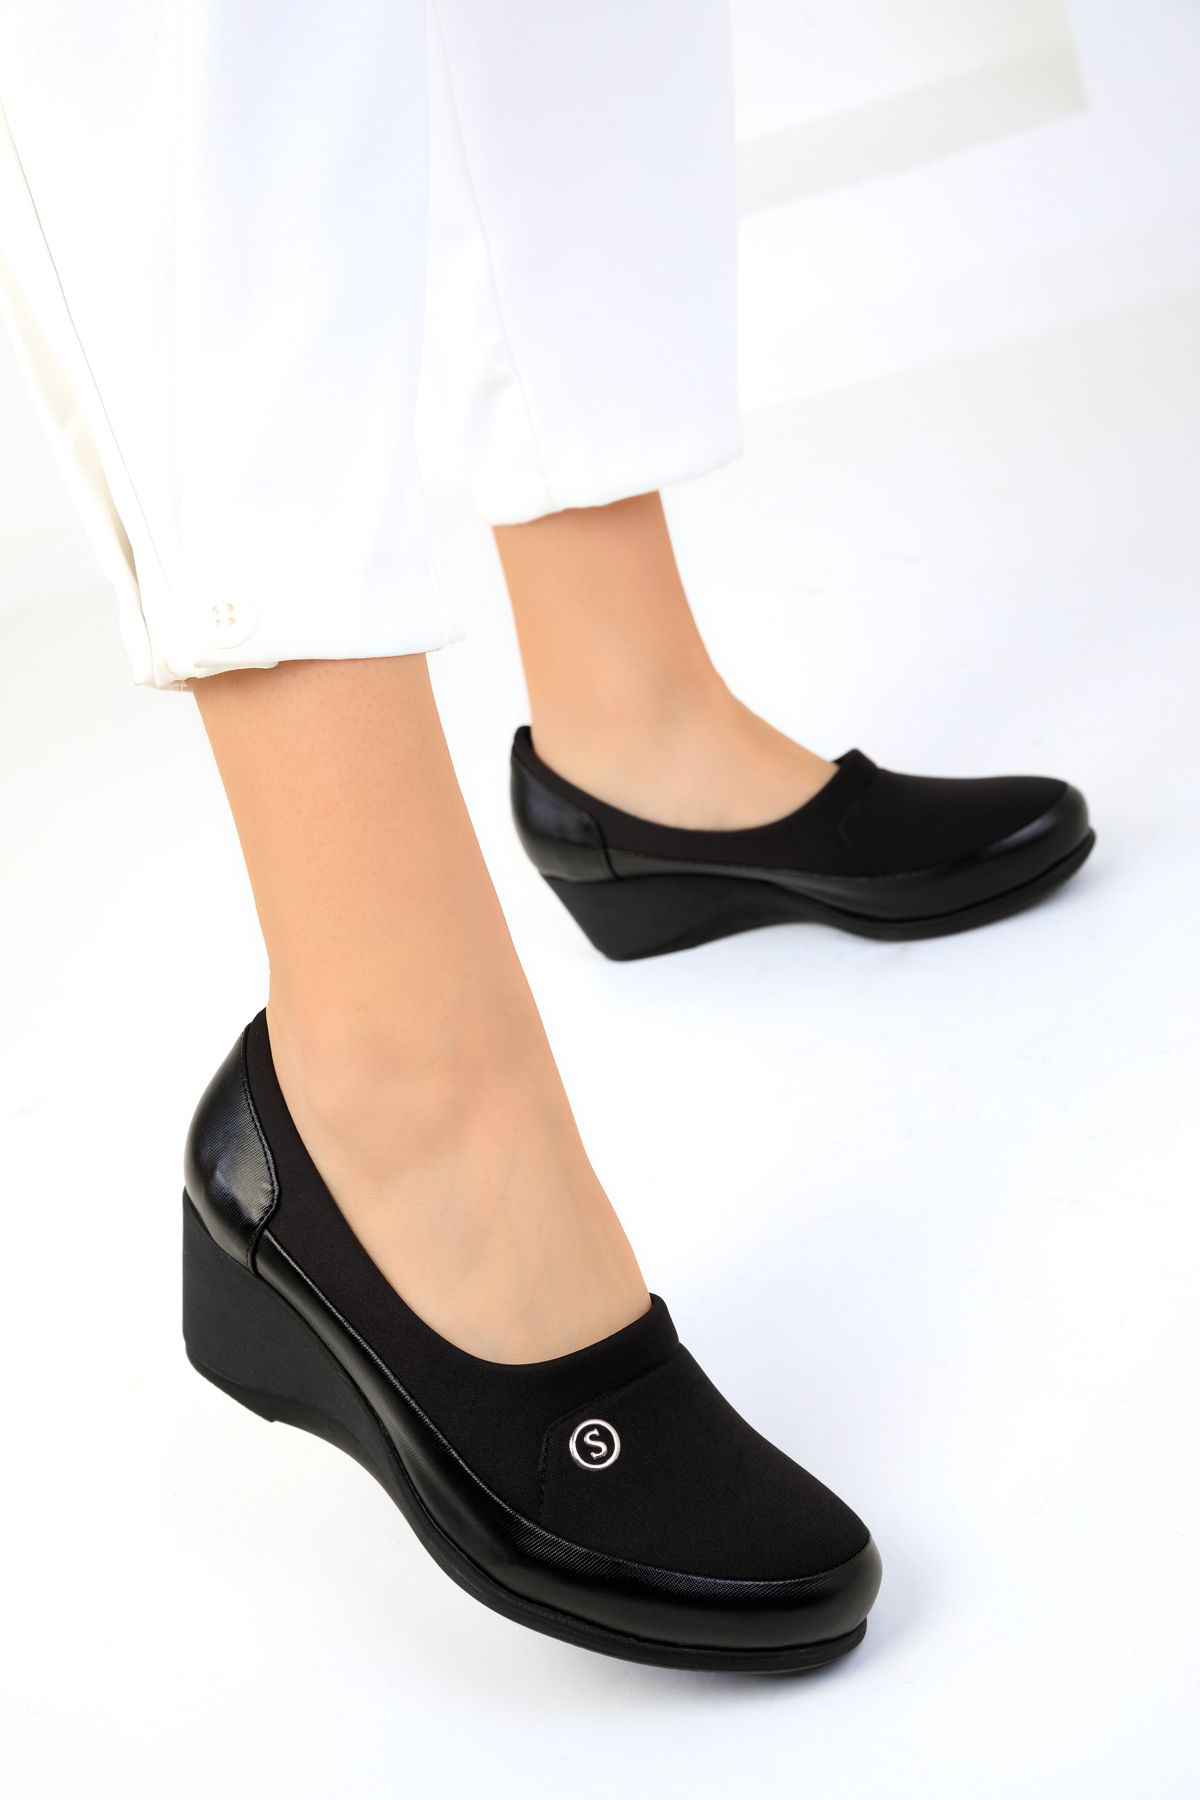 SOHO Siyah Kadın Dolgu Topuklu Ayakkabı 18918